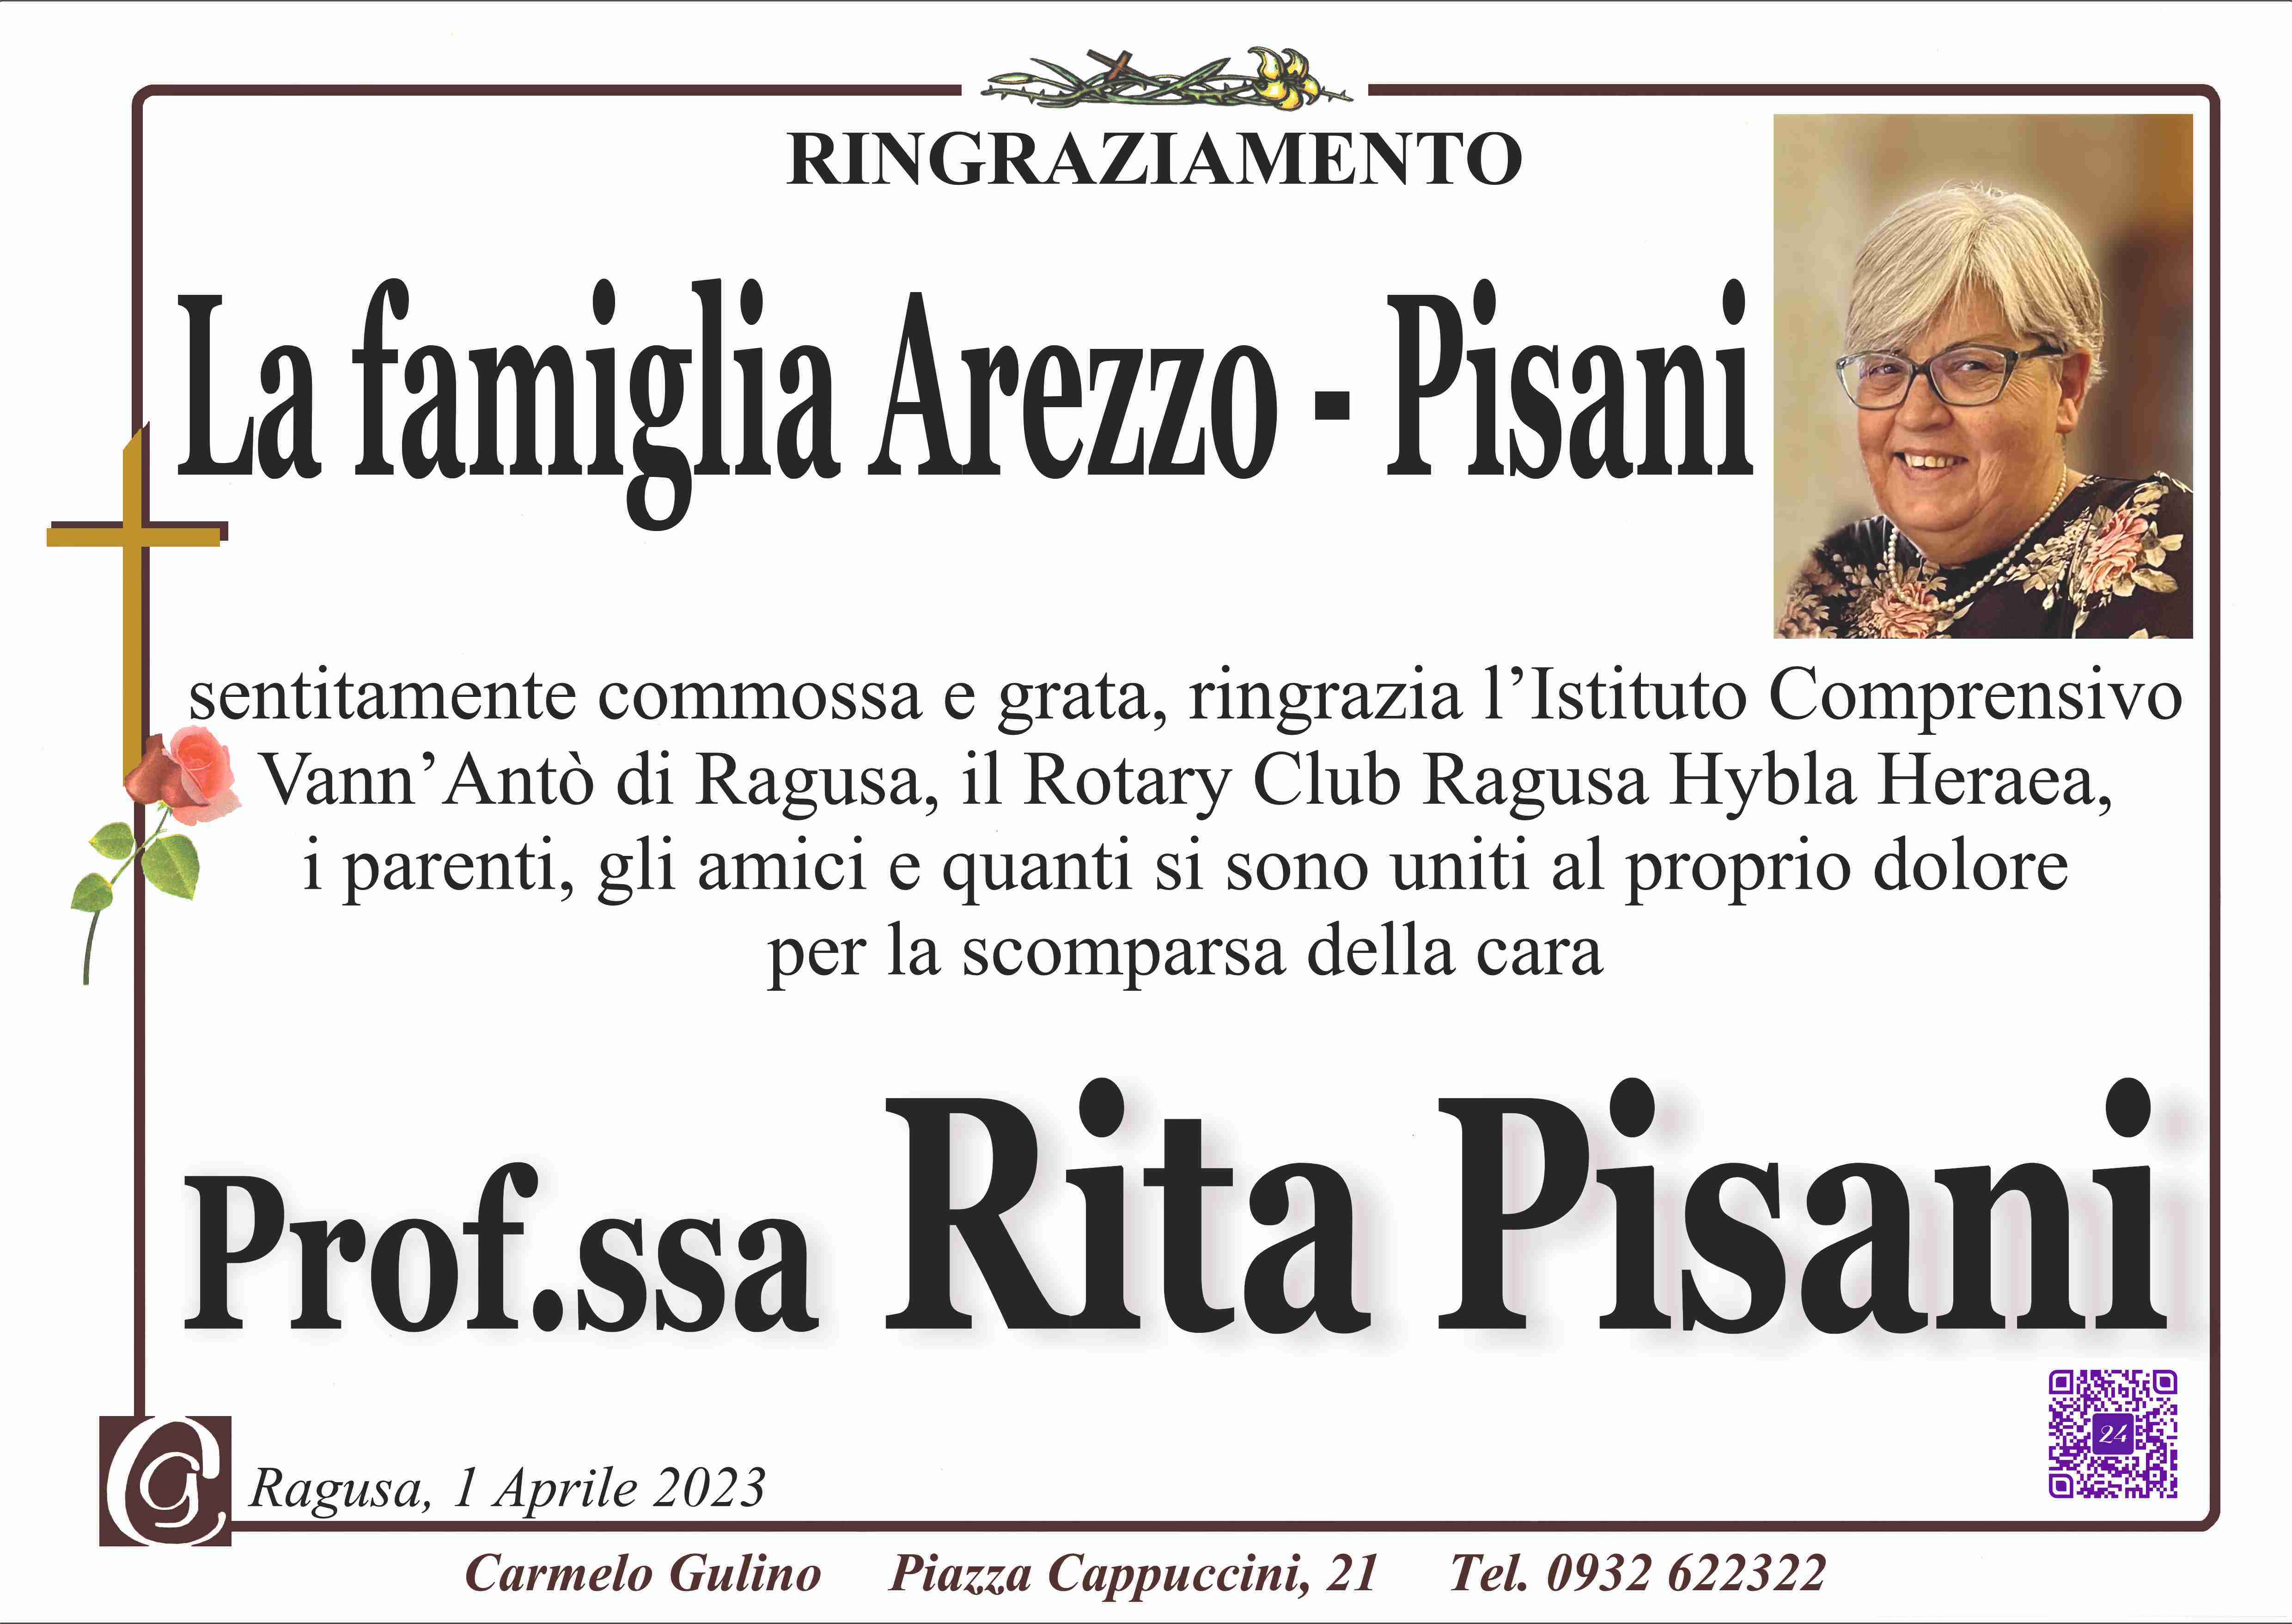 Rita Pisani